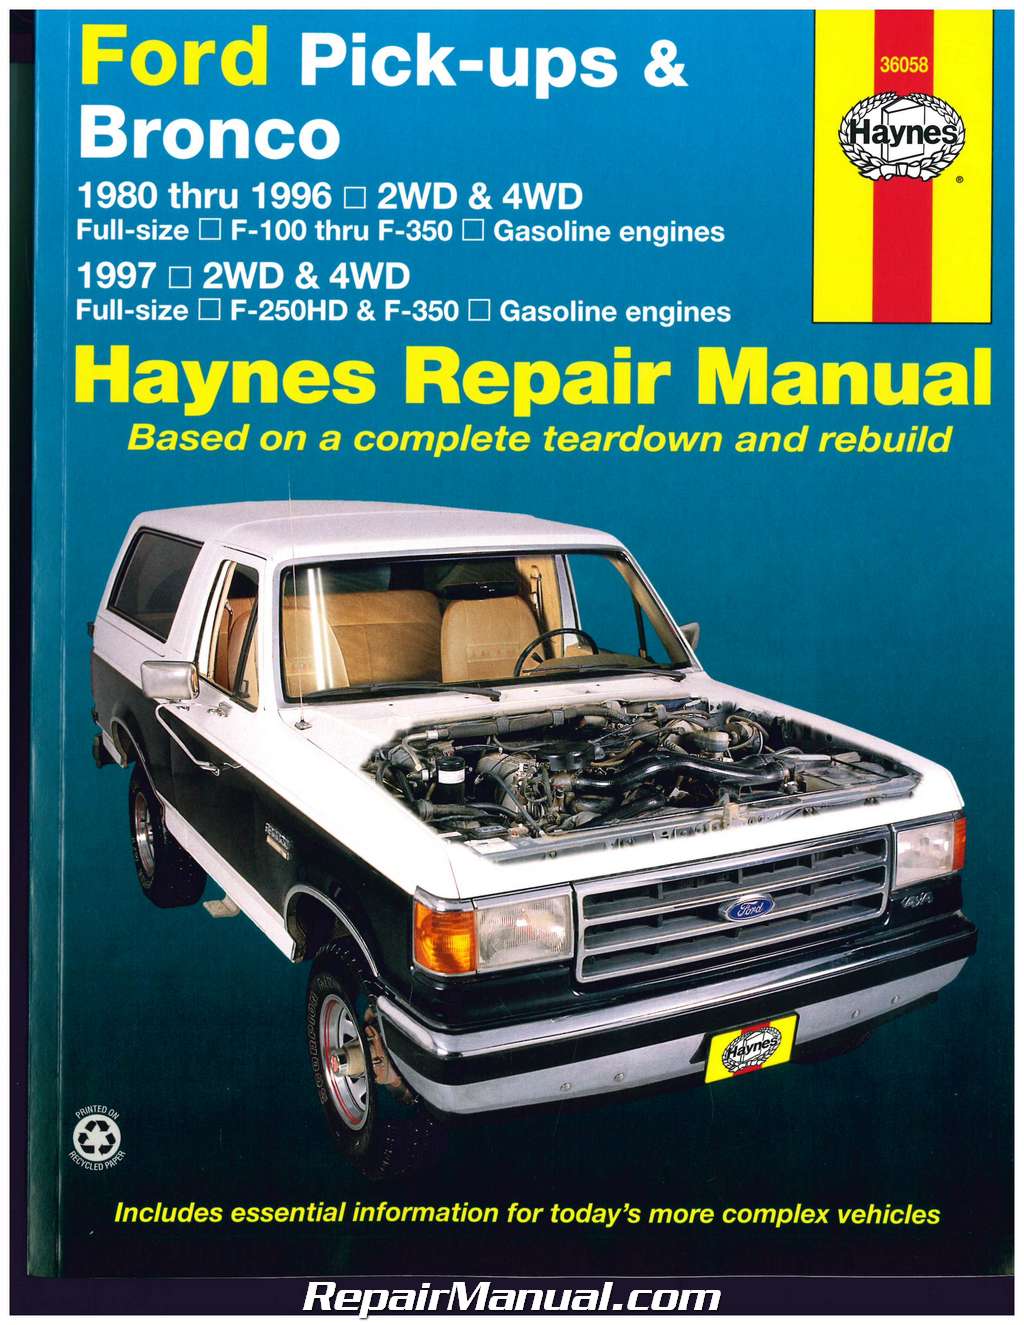 Haynes ford truck repair manual #6